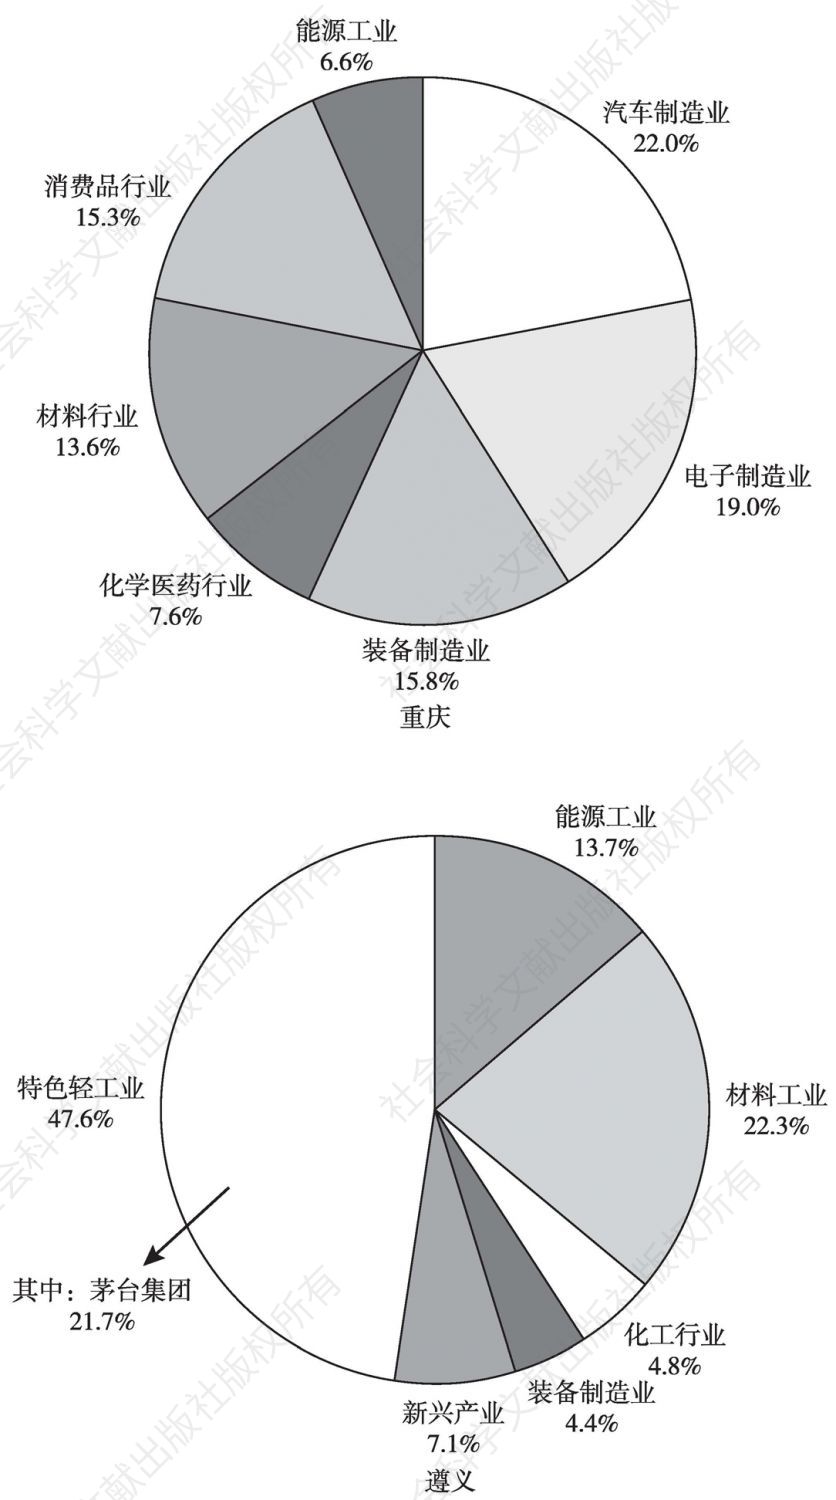 图4 2015年重庆、遵义产业结构对比